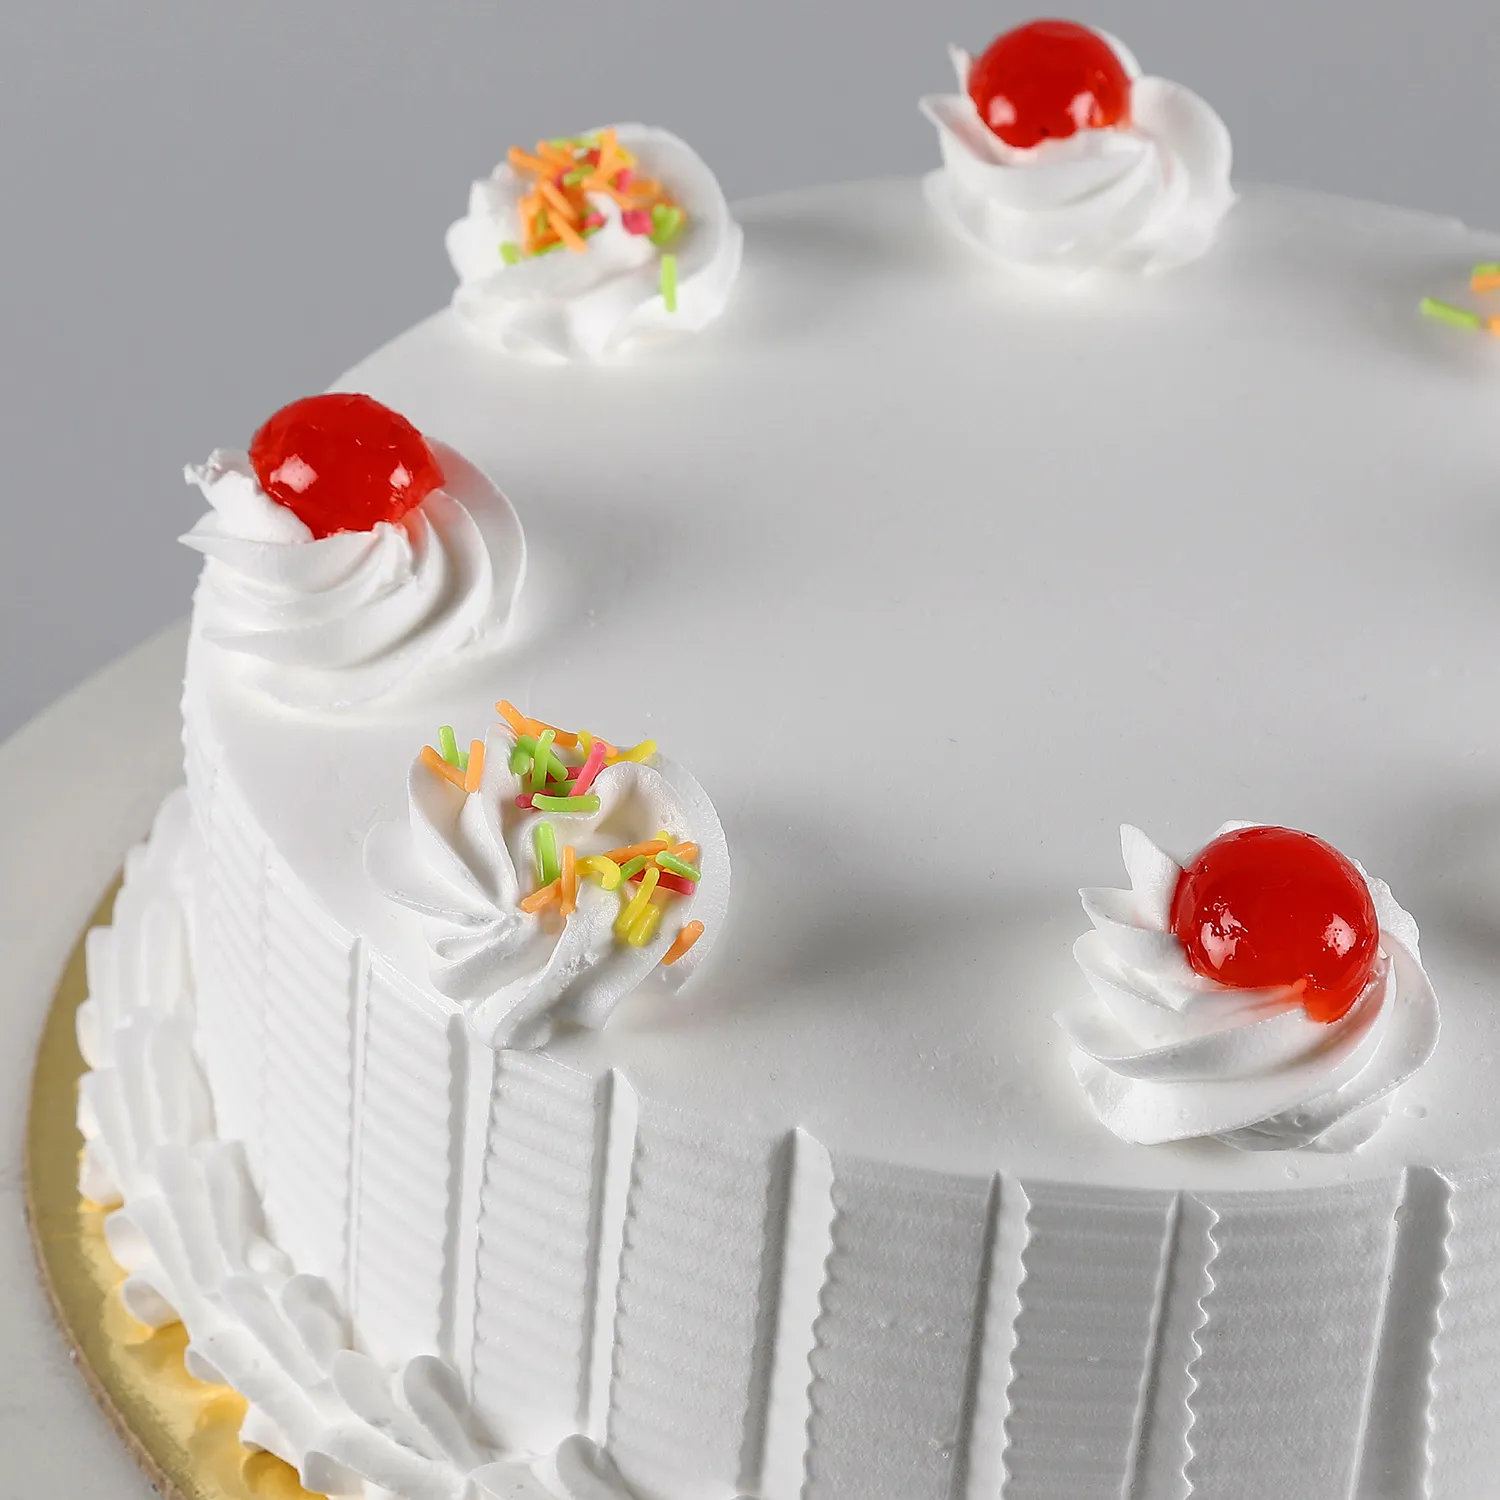 Happy Birthday Cake - 1.5 KG